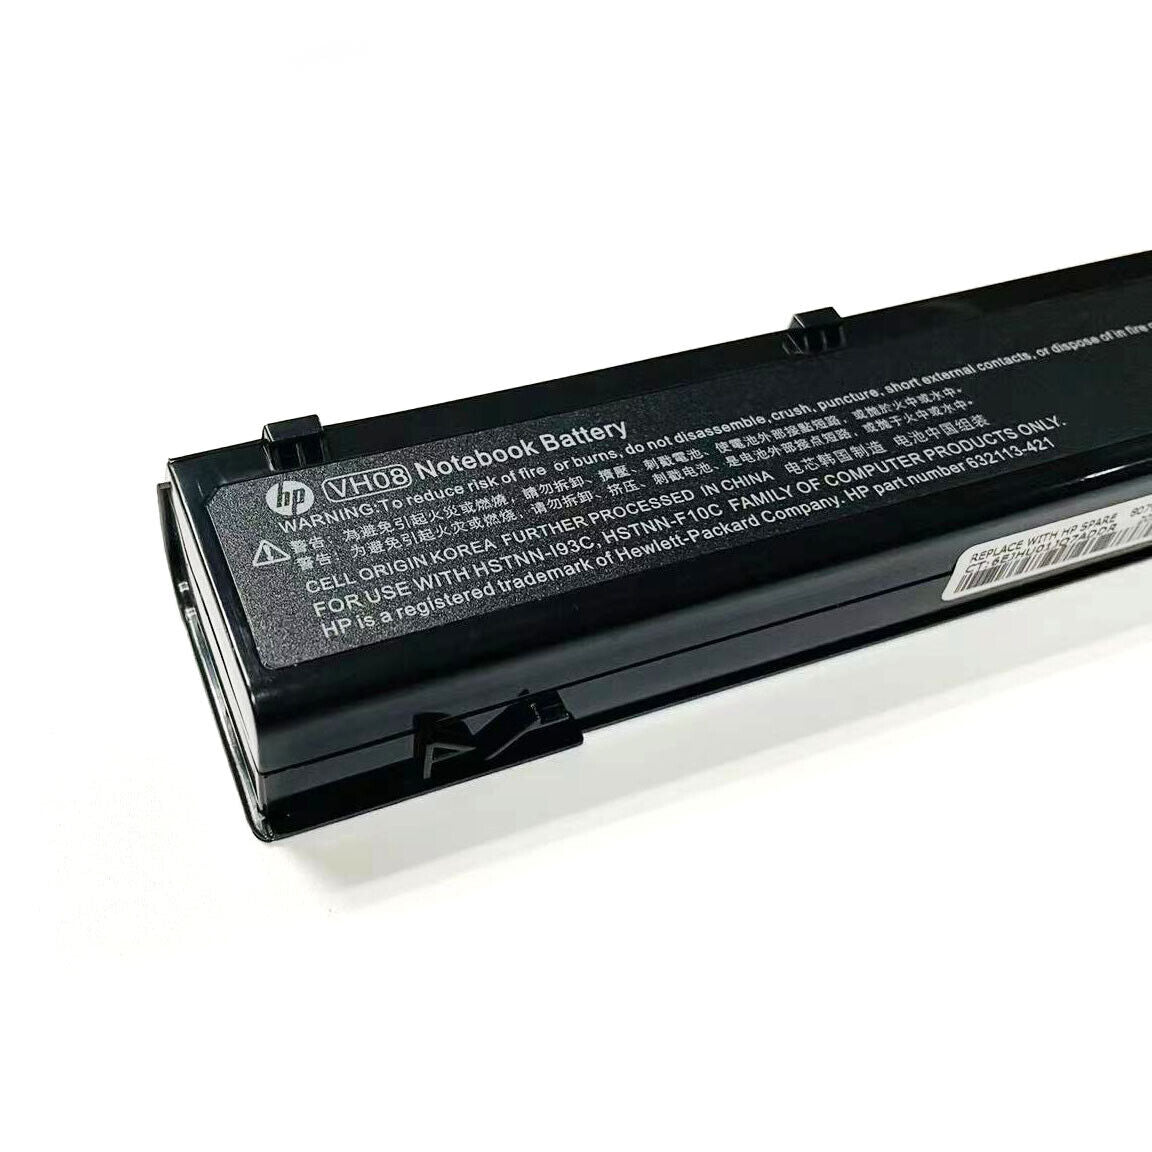 HP 632425-001 Genuine Battery 83Wh EliteBook 8560w 8570w 8760w 8770w 632427-001 632113-151